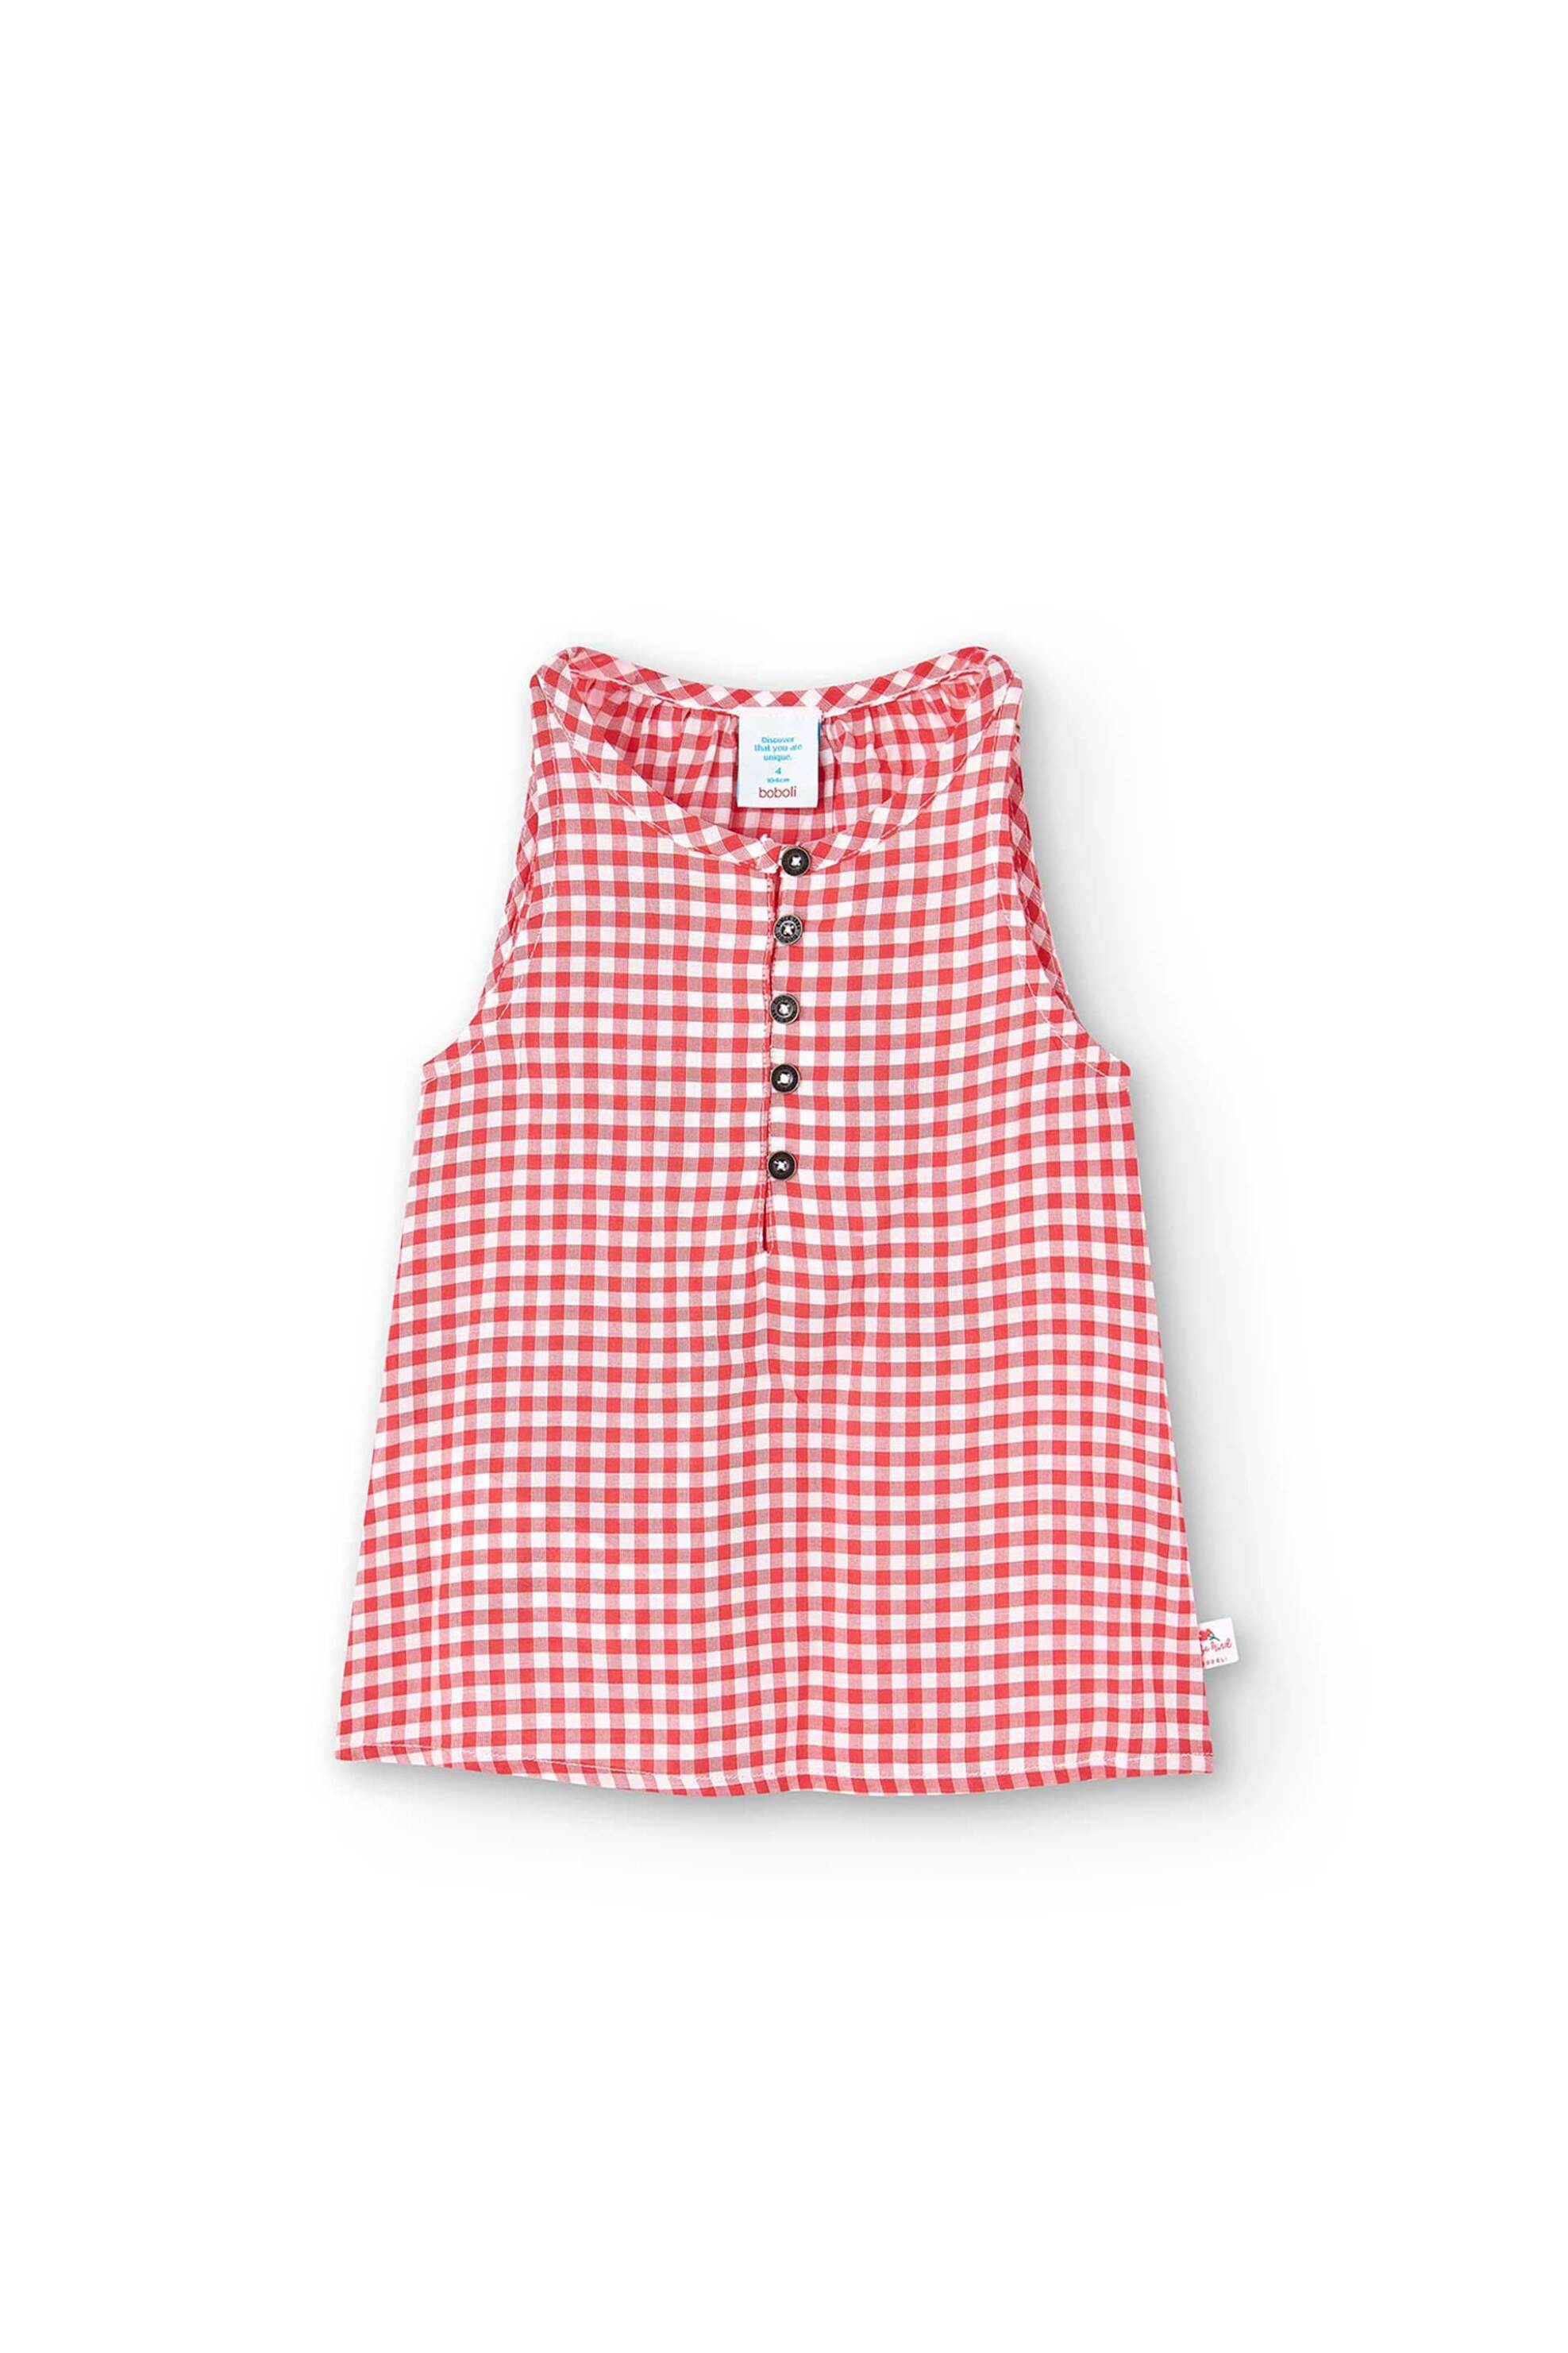 Παιδικά Ρούχα, Παπούτσια & Παιχνίδια > Παιδικά Ρούχα & Αξεσουάρ για Κορίτσια > Παιδικές Μπλούζες για Κορίτσια Boboli παιδική μπλούζα με καρό print - 418126 Κόκκινο